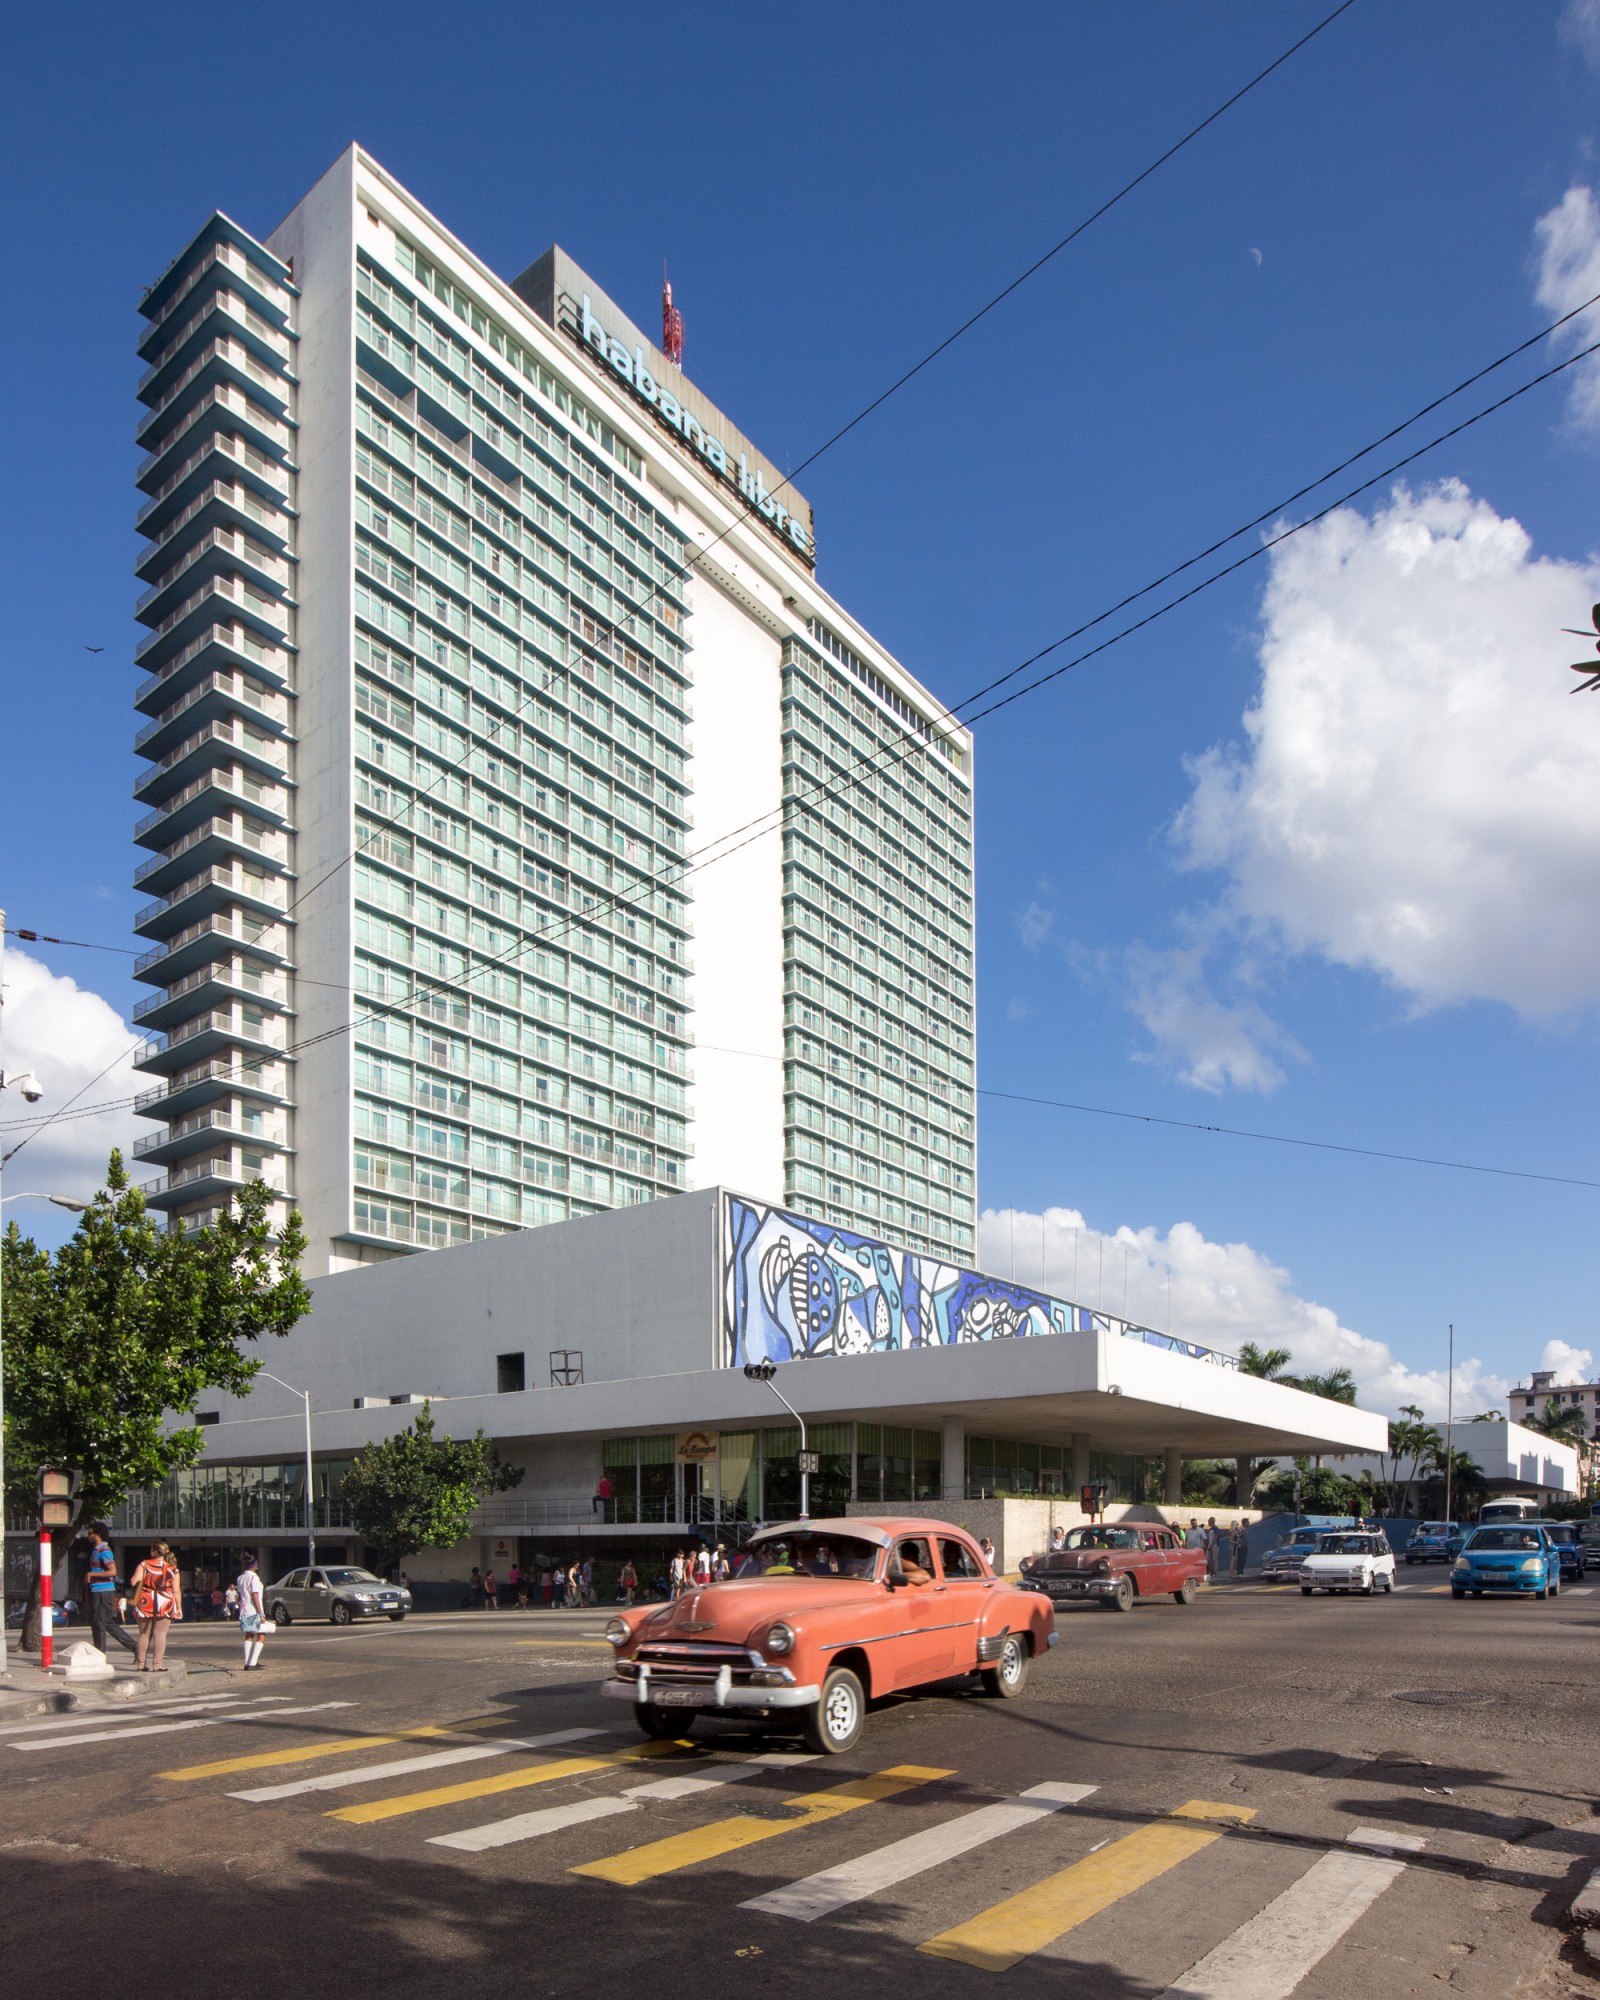 Đã từng có một thời khách sạn Hilton là biểu tượng của sự hiện diện của Mỹ ở Cuba. Nhưng sau cuộc cách mạng Cuba, cố chủ tịch Fidel Castro cho đóng cửa khách sạn để làm phủ chủ tịch nước, cùng với việc đặt trụ sở của các cơ quan ngoại giao đại diện những nước Mỹ Latin khác. Trước làn sóng khách du lịch nước ngoài, khách sạn nay đã được mở lại dưới tên gọi Habana Libre